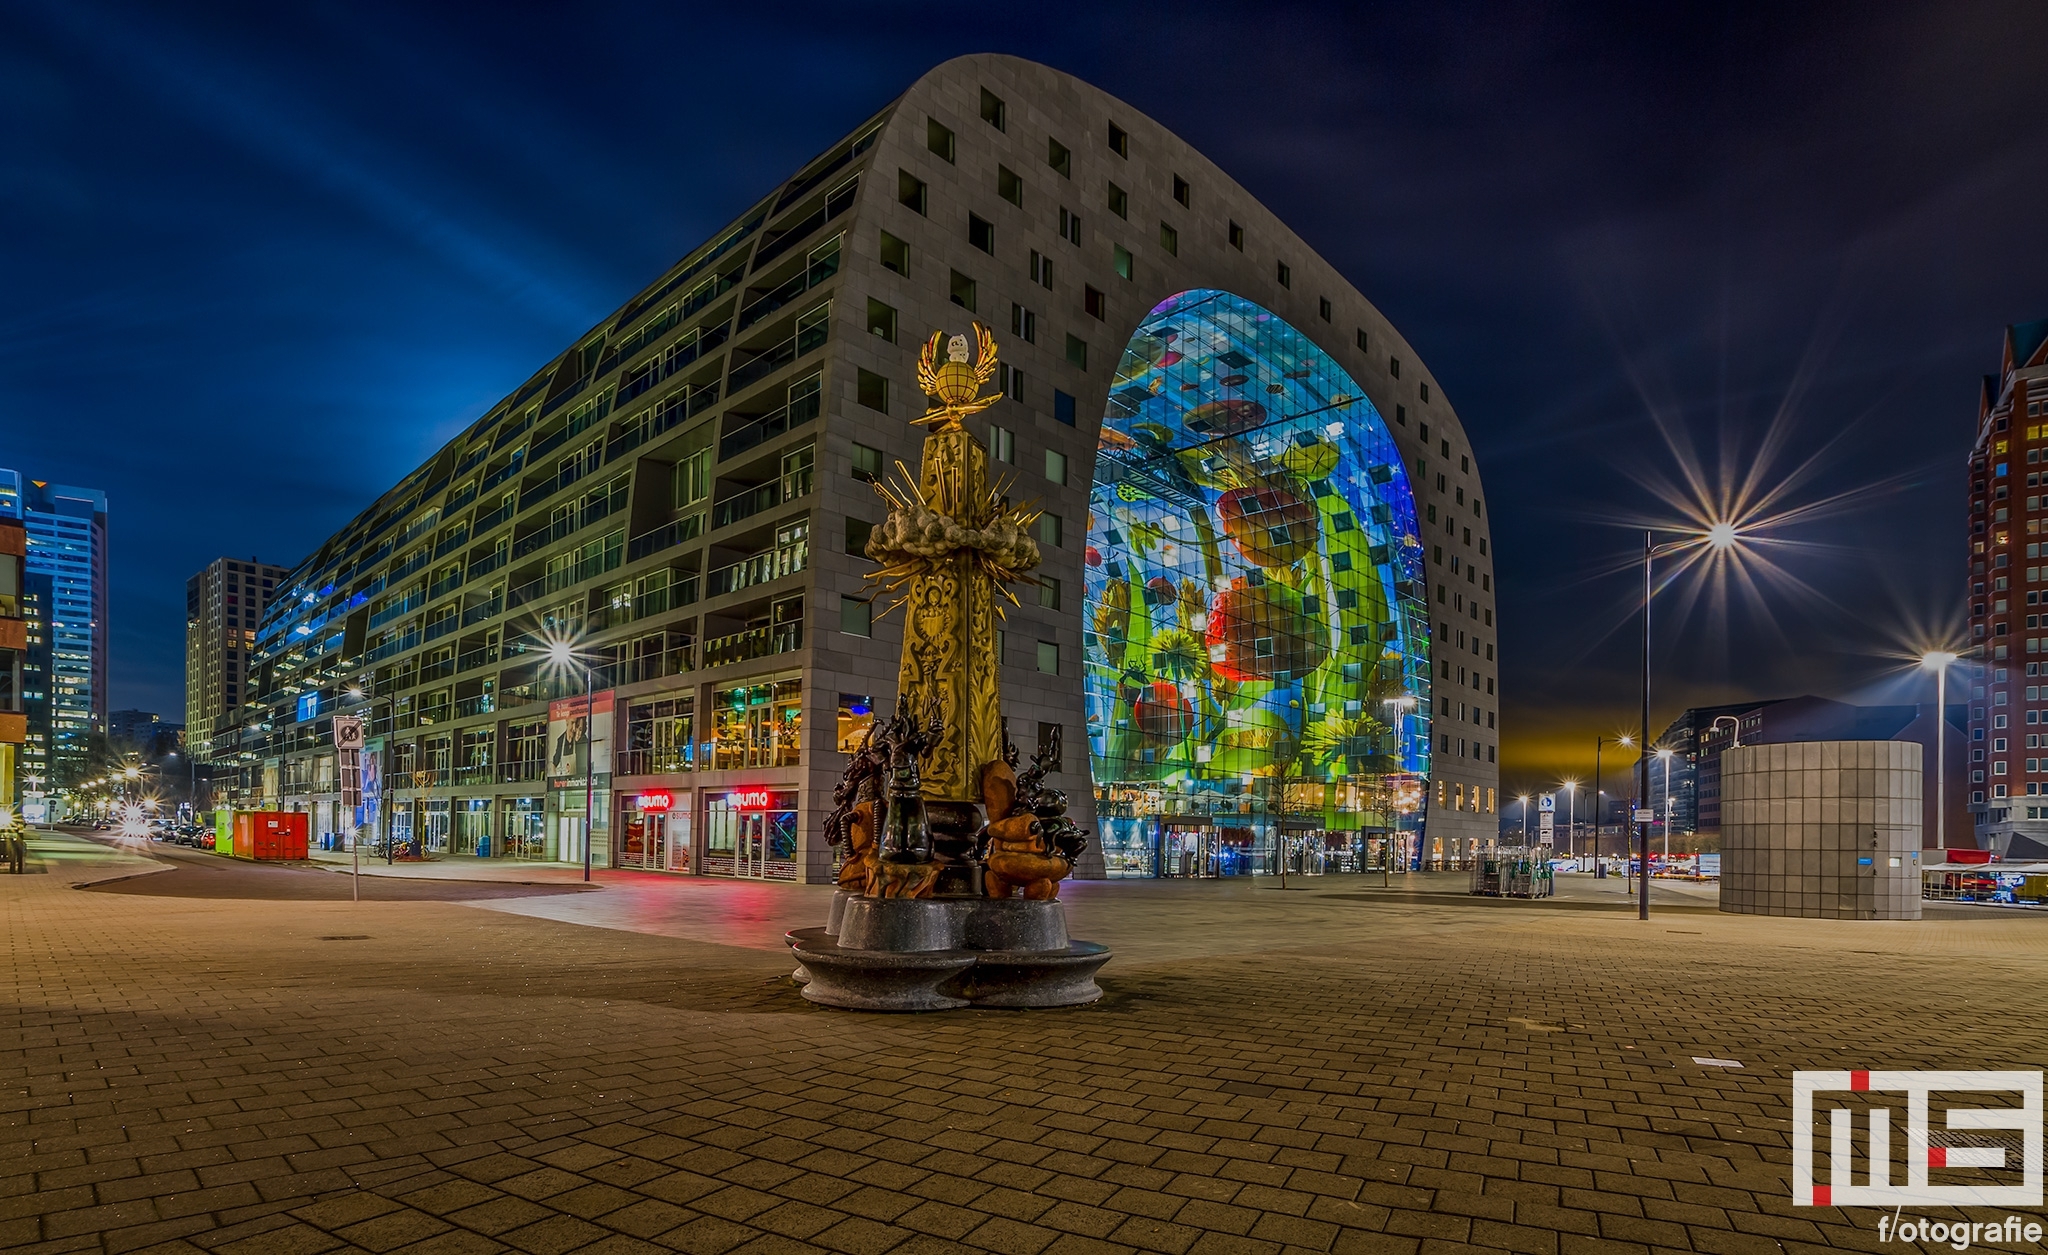 Te Koop | De Markthal in Rotterdam met op de voorgrond het Marten Toonder Monument